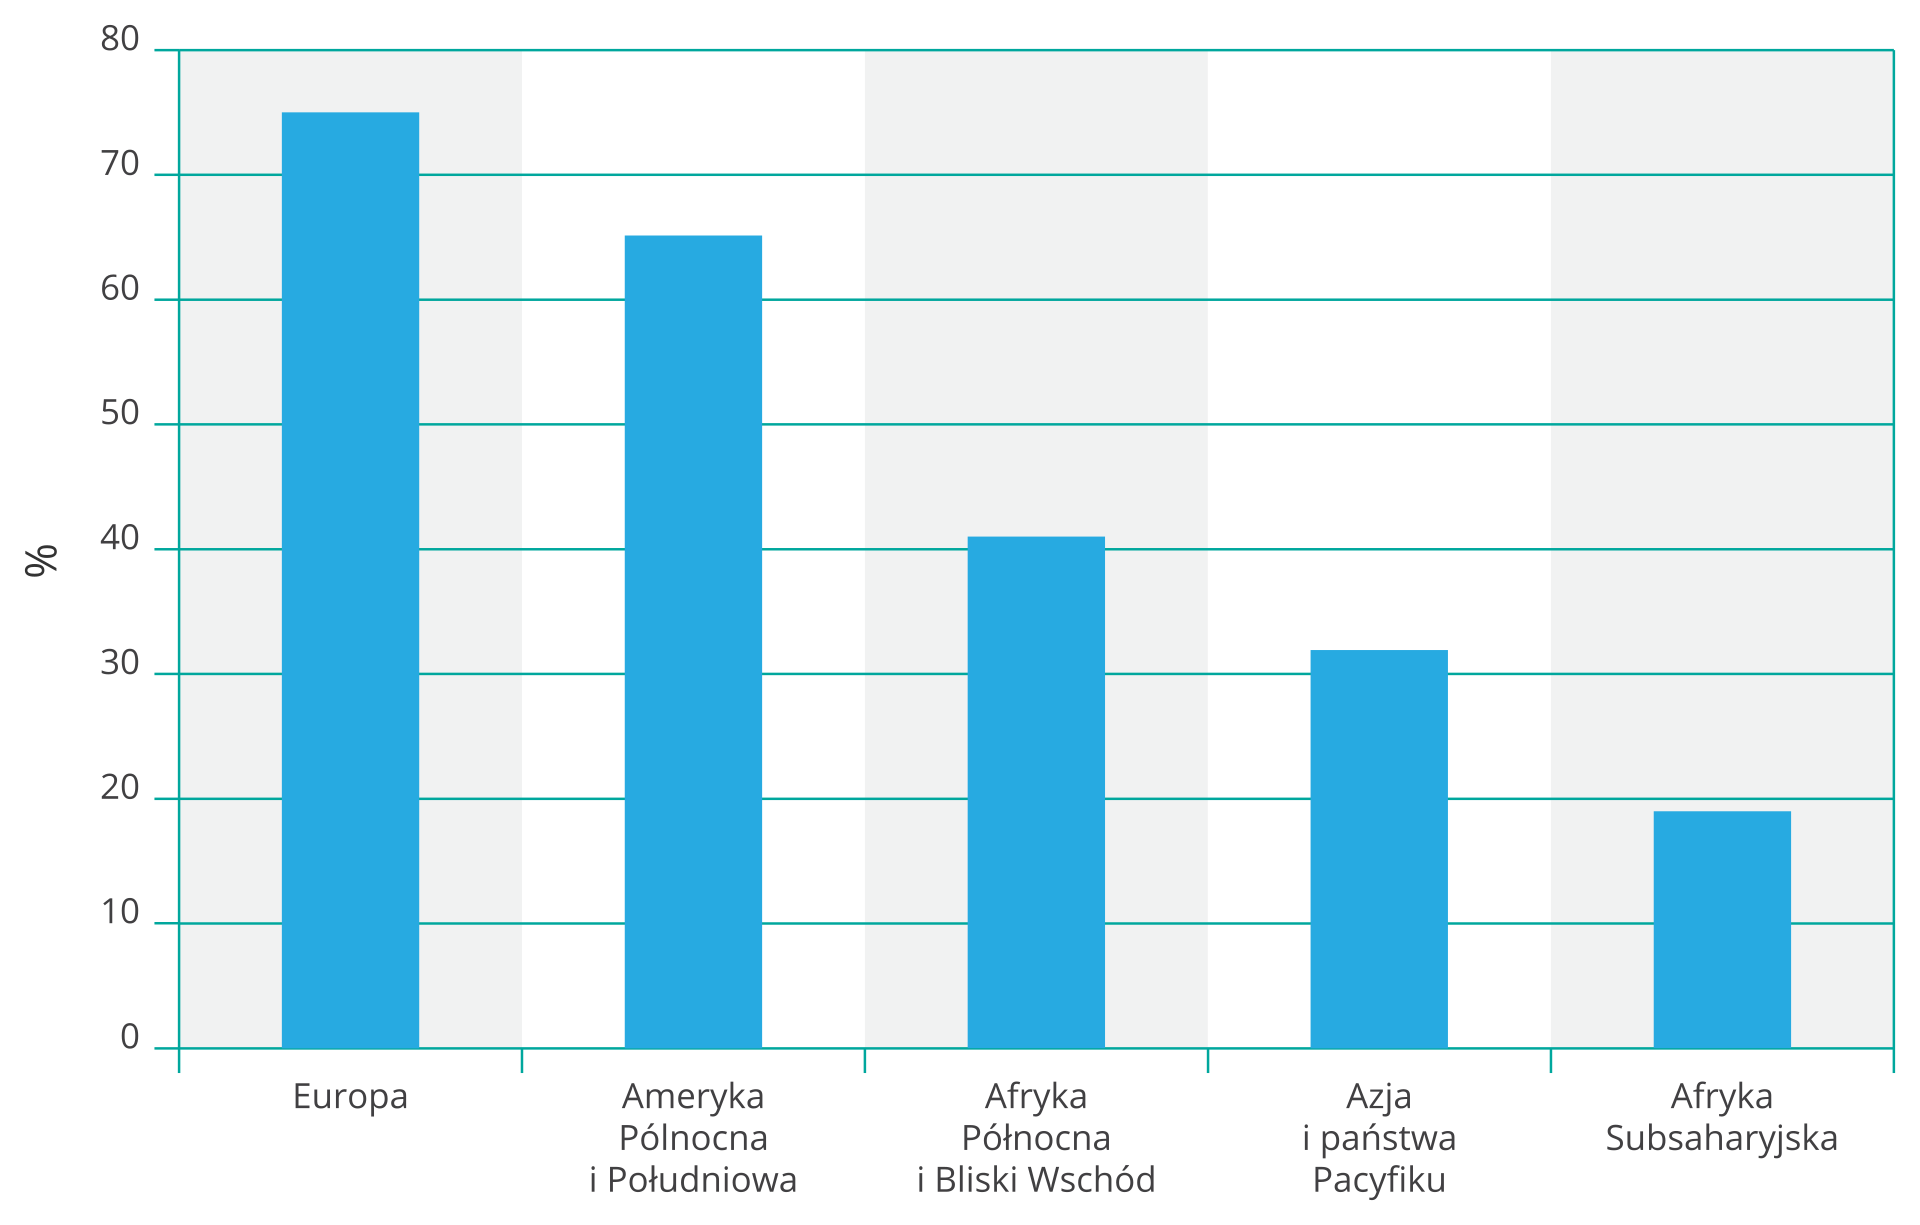 Na ilustracji wykres słupkowy. Na osi pionowej z lewej strony wartości od zera do osiemdziesięciu w procentach, odsetek użytkowników Internetu. Na osi poziomej opisano kolejno od lewej: Europa, Ameryka Północna i Południowa, Afryka Północna i Bliski Wschód, Azja i państwa Pacyfiku, Afryka Subsaharyjska. Pięć niebieskich słupków, coraz niższe od siedemdziesięciu pięciu (Europa) do dwudziestu procent (Afryka Subsaharyjska).